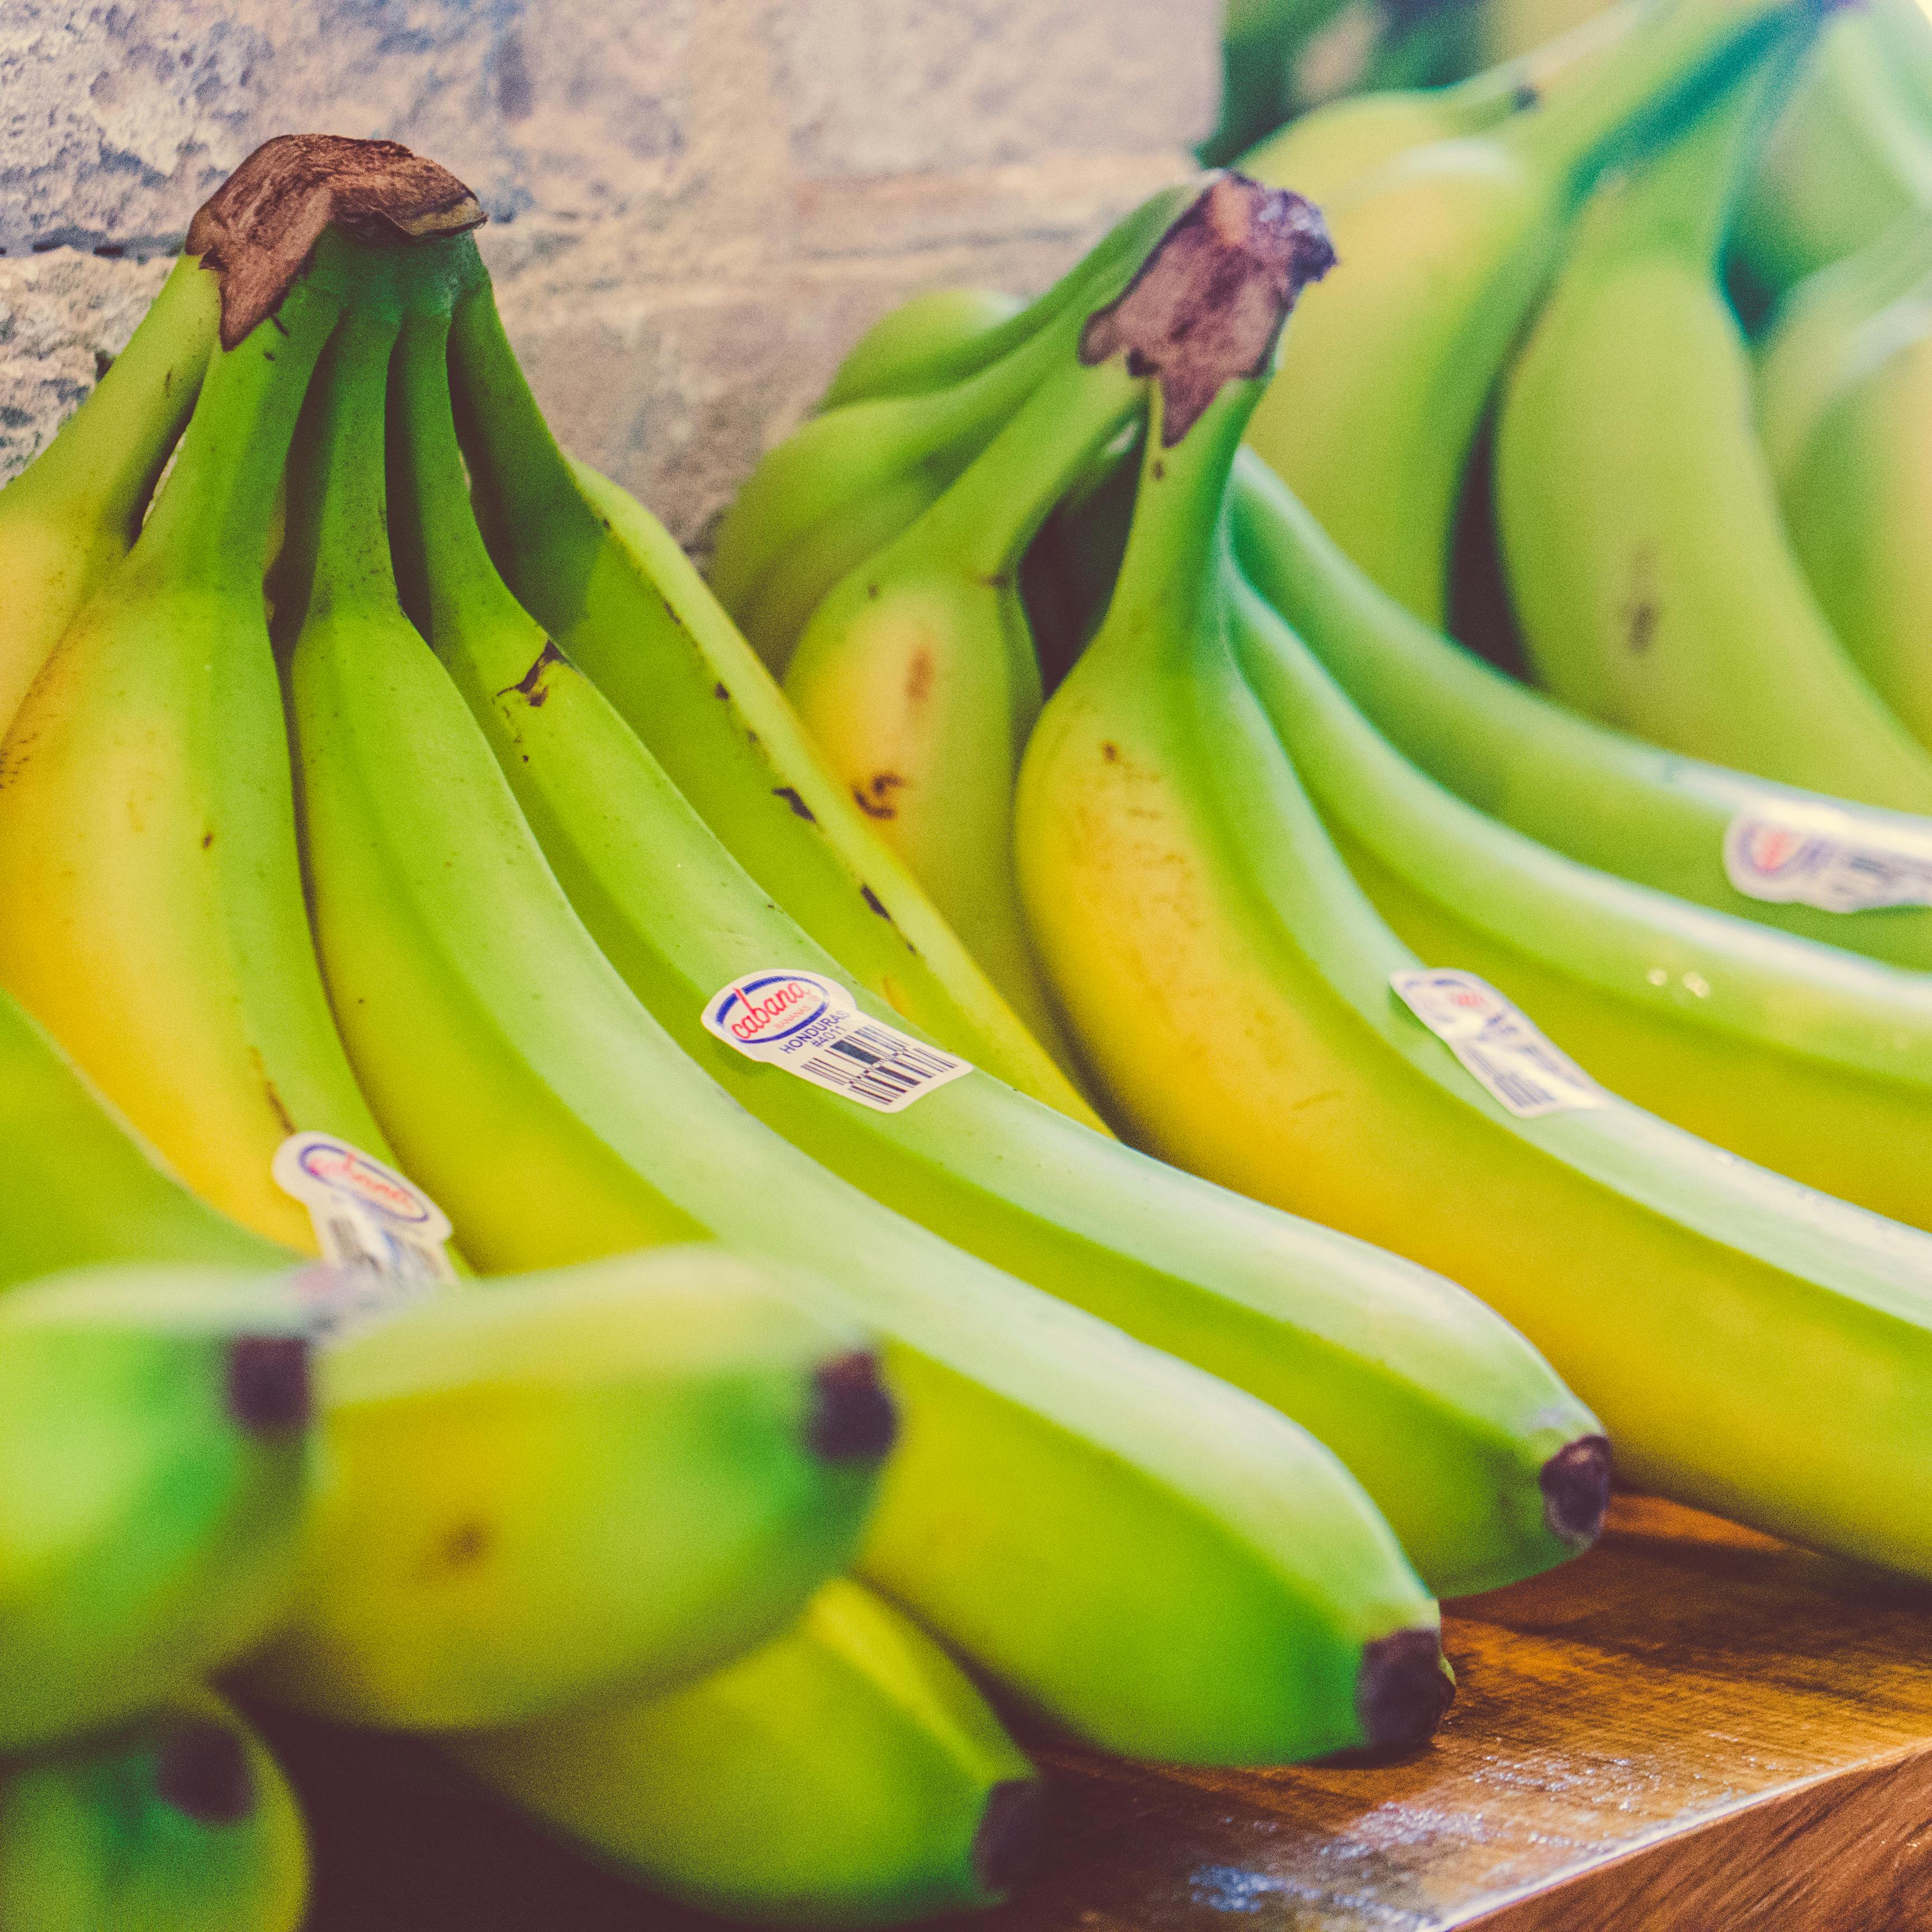 Kostenloses Foto zum Thema: bananen, bündel, farben